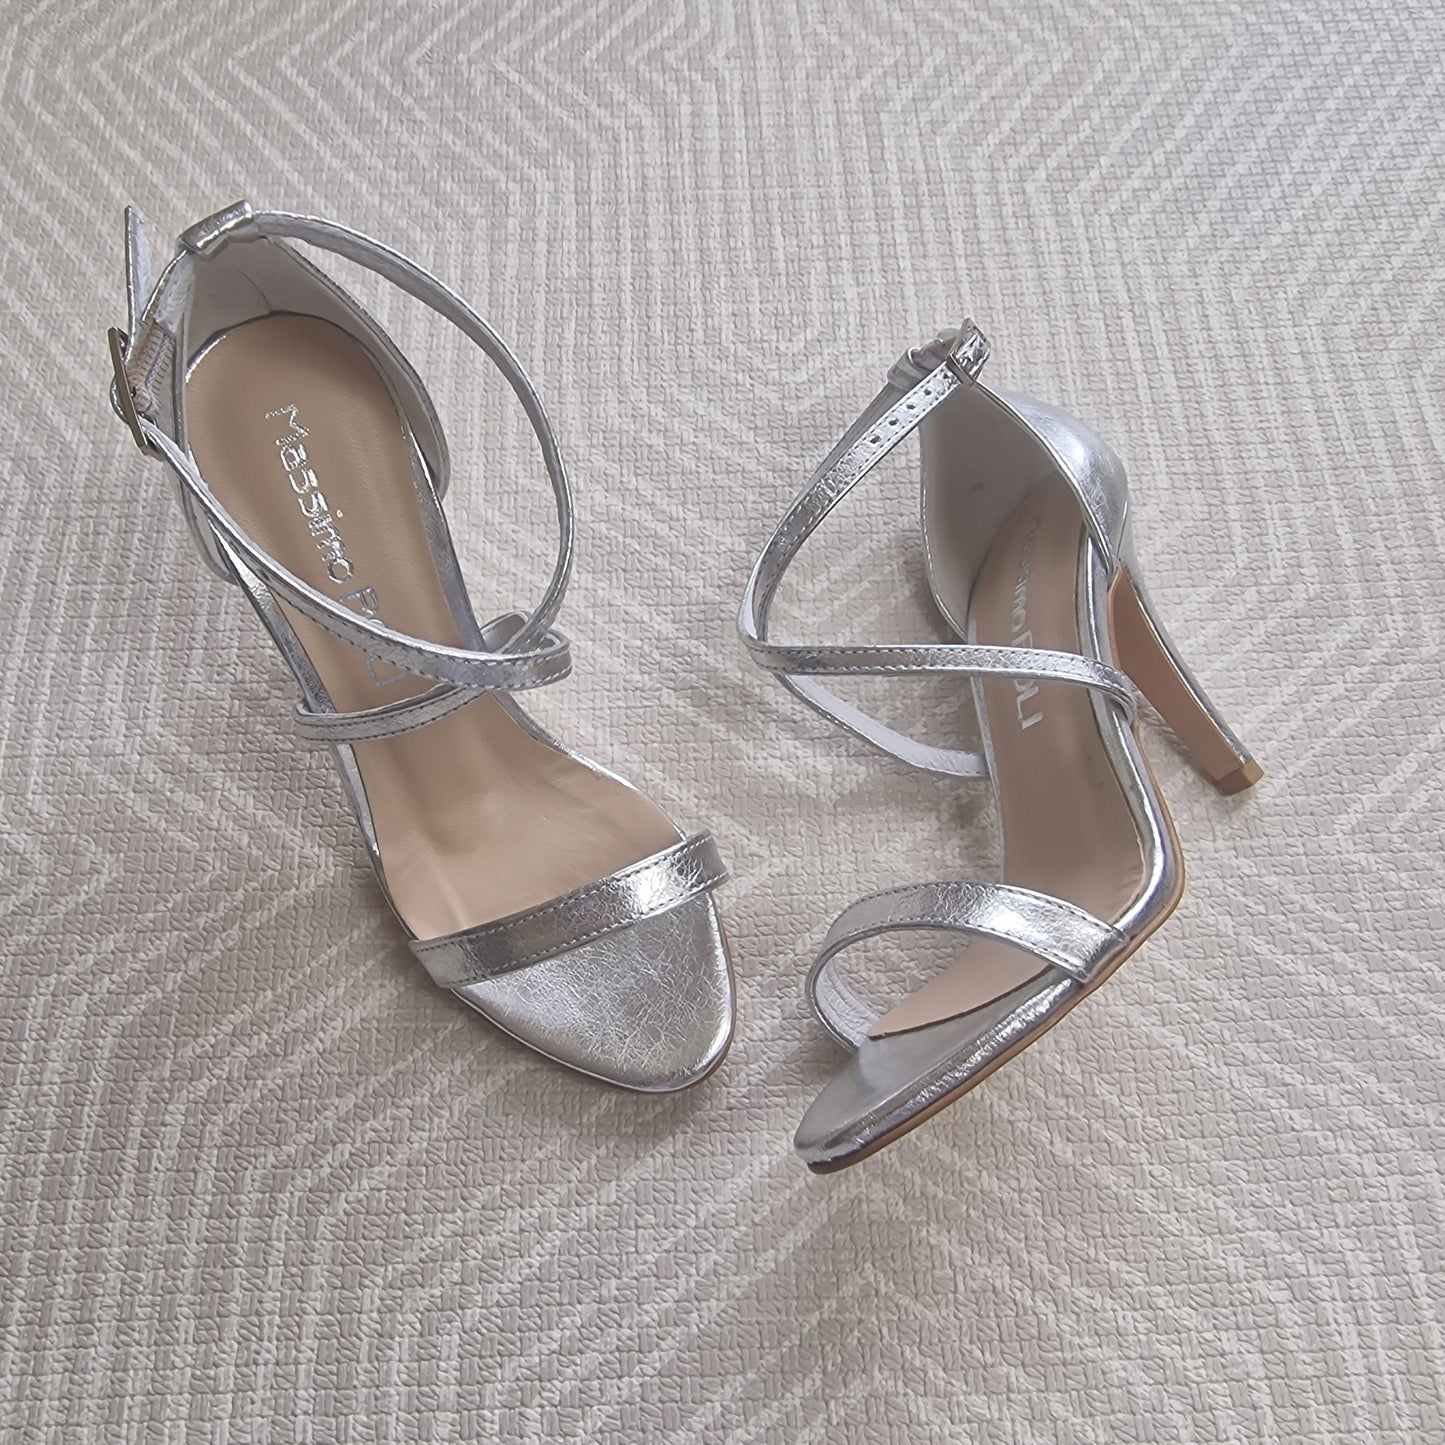 Cross strap silver leather heels